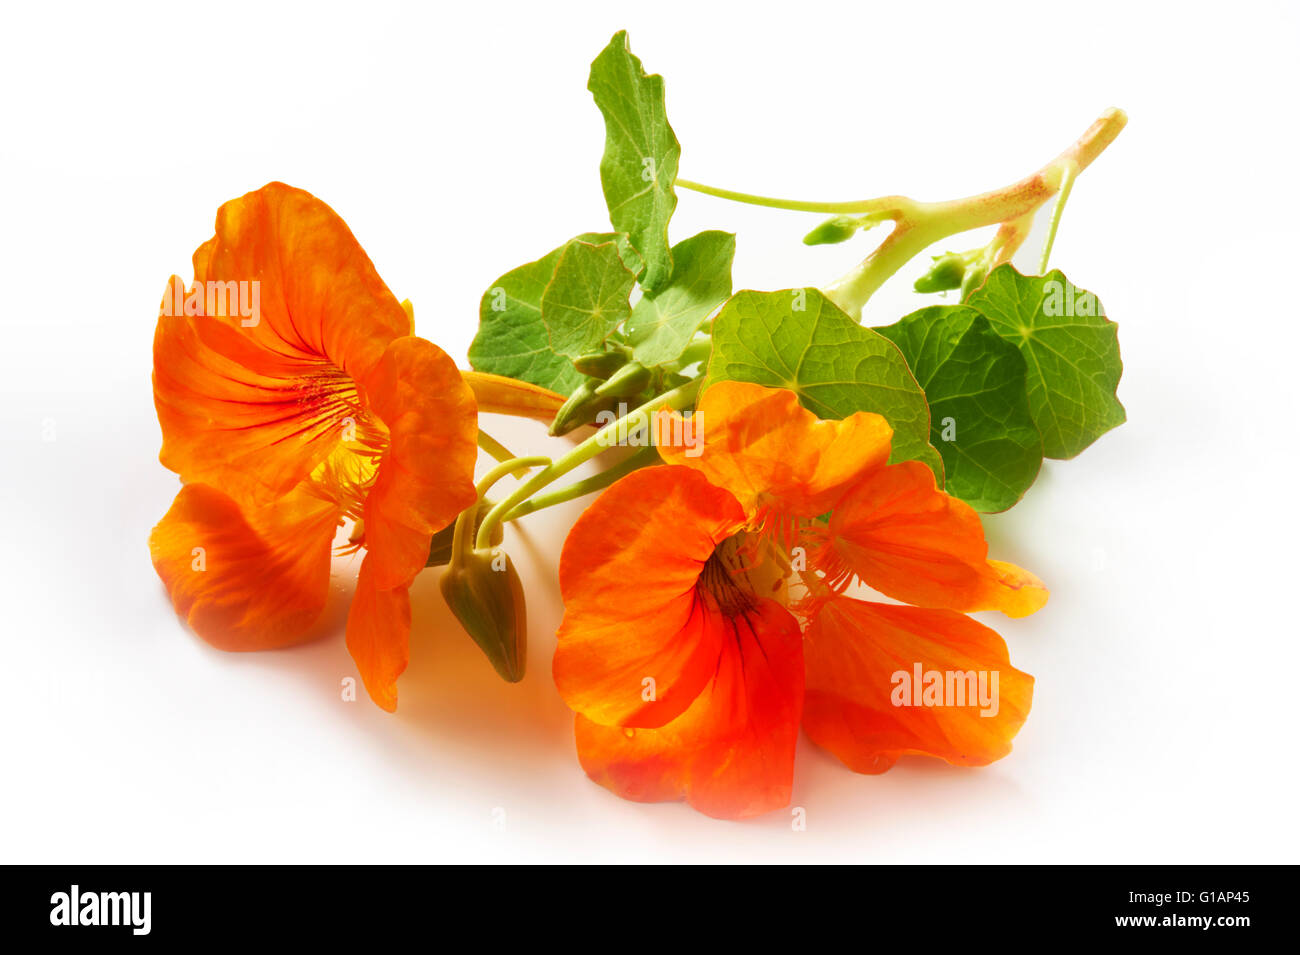 Succo di arancia nasturtium fiori e foglie Foto Stock